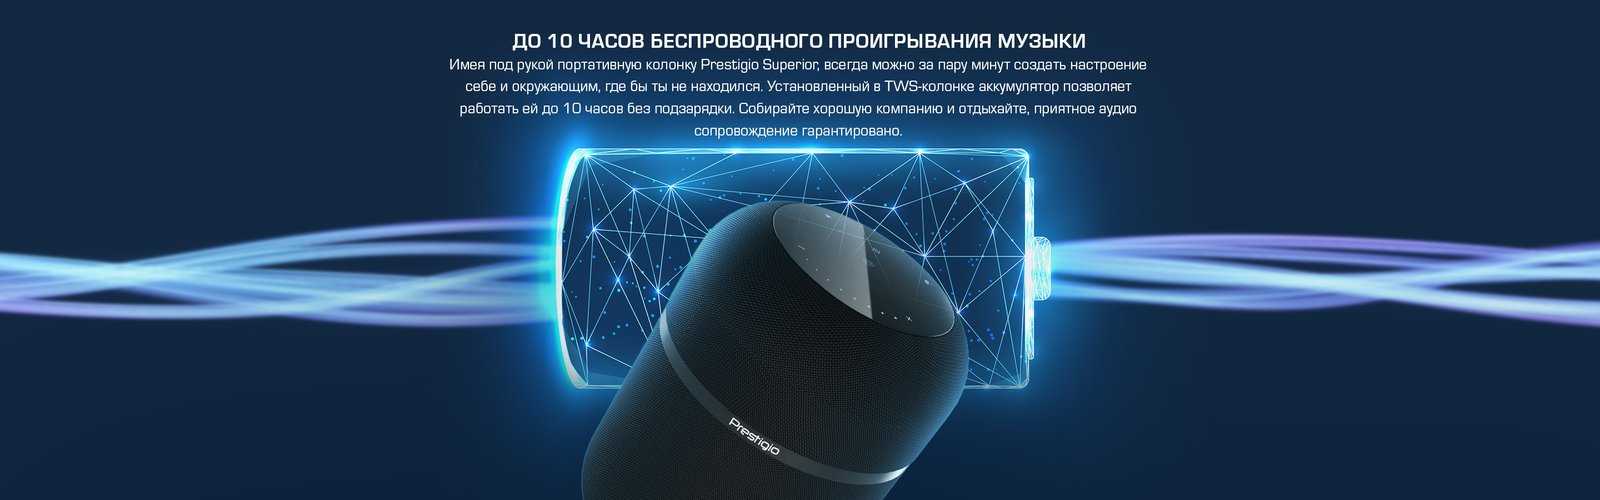 Обзор сенсорных беспроводных наушников tws i11 (5.0) — отзыв и инструкция на русском, как заряжать, подключить по bluetooth и пользоваться - вайфайка.ру